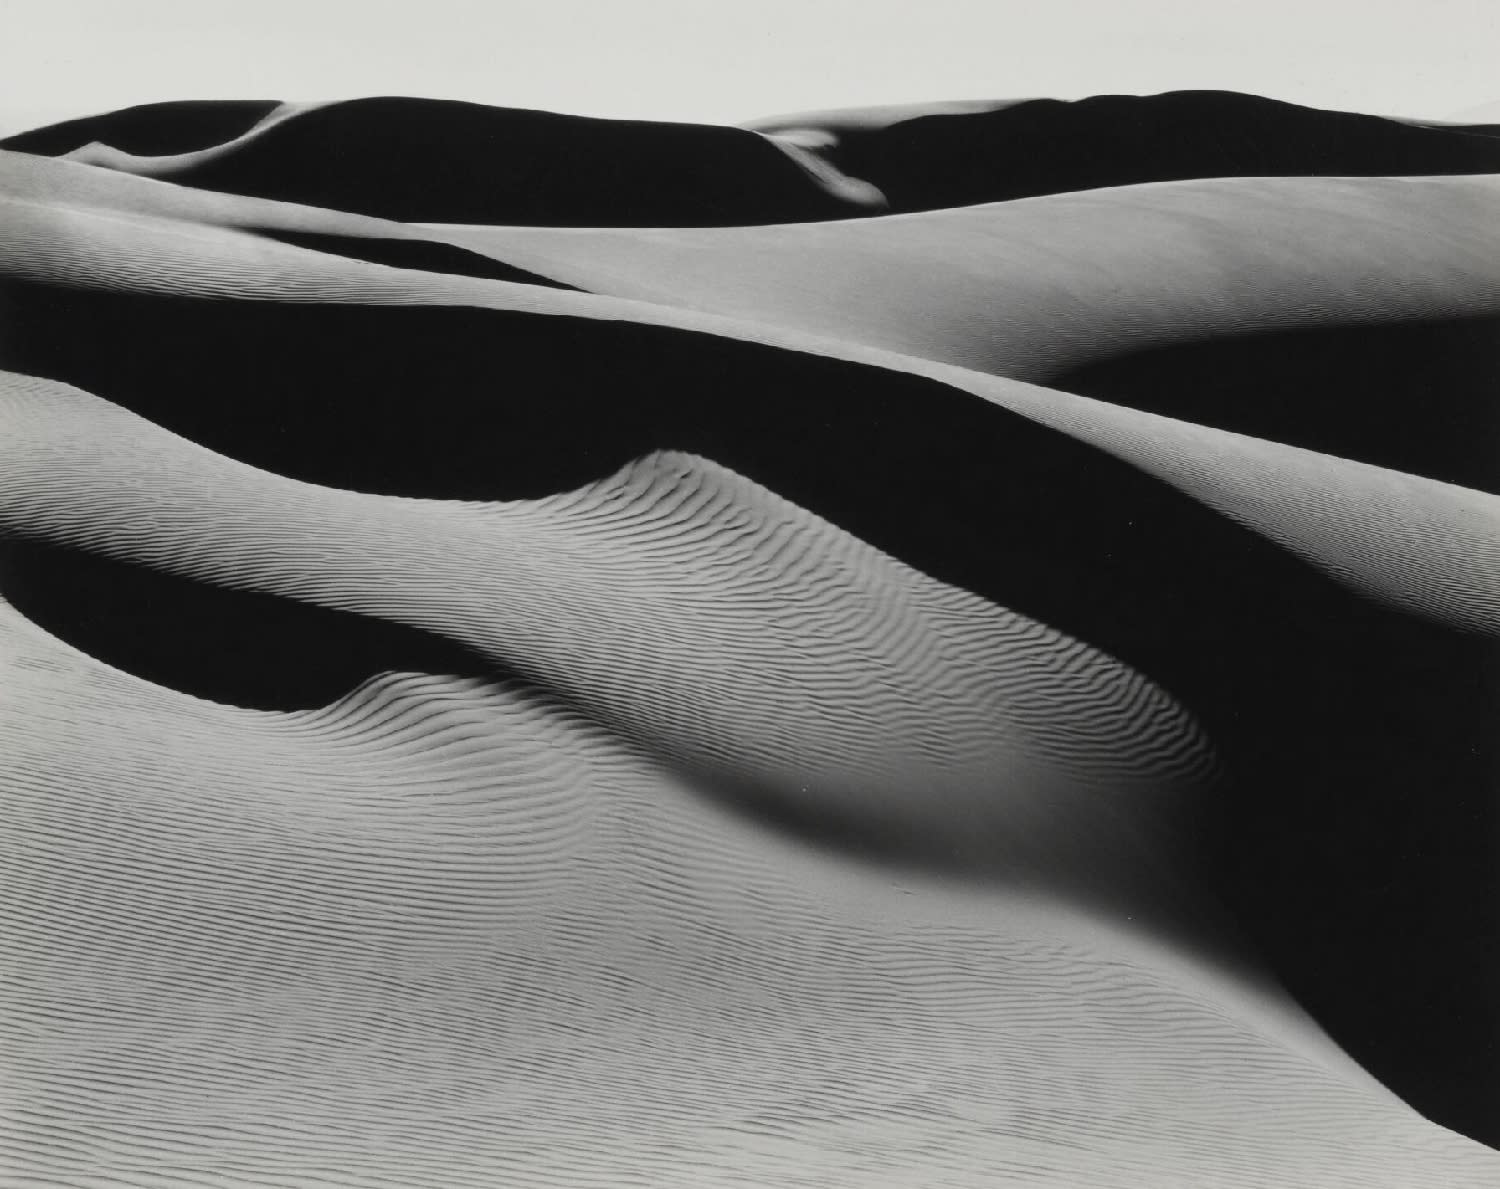 Edward Weston, Dunes, Oceano, 1937